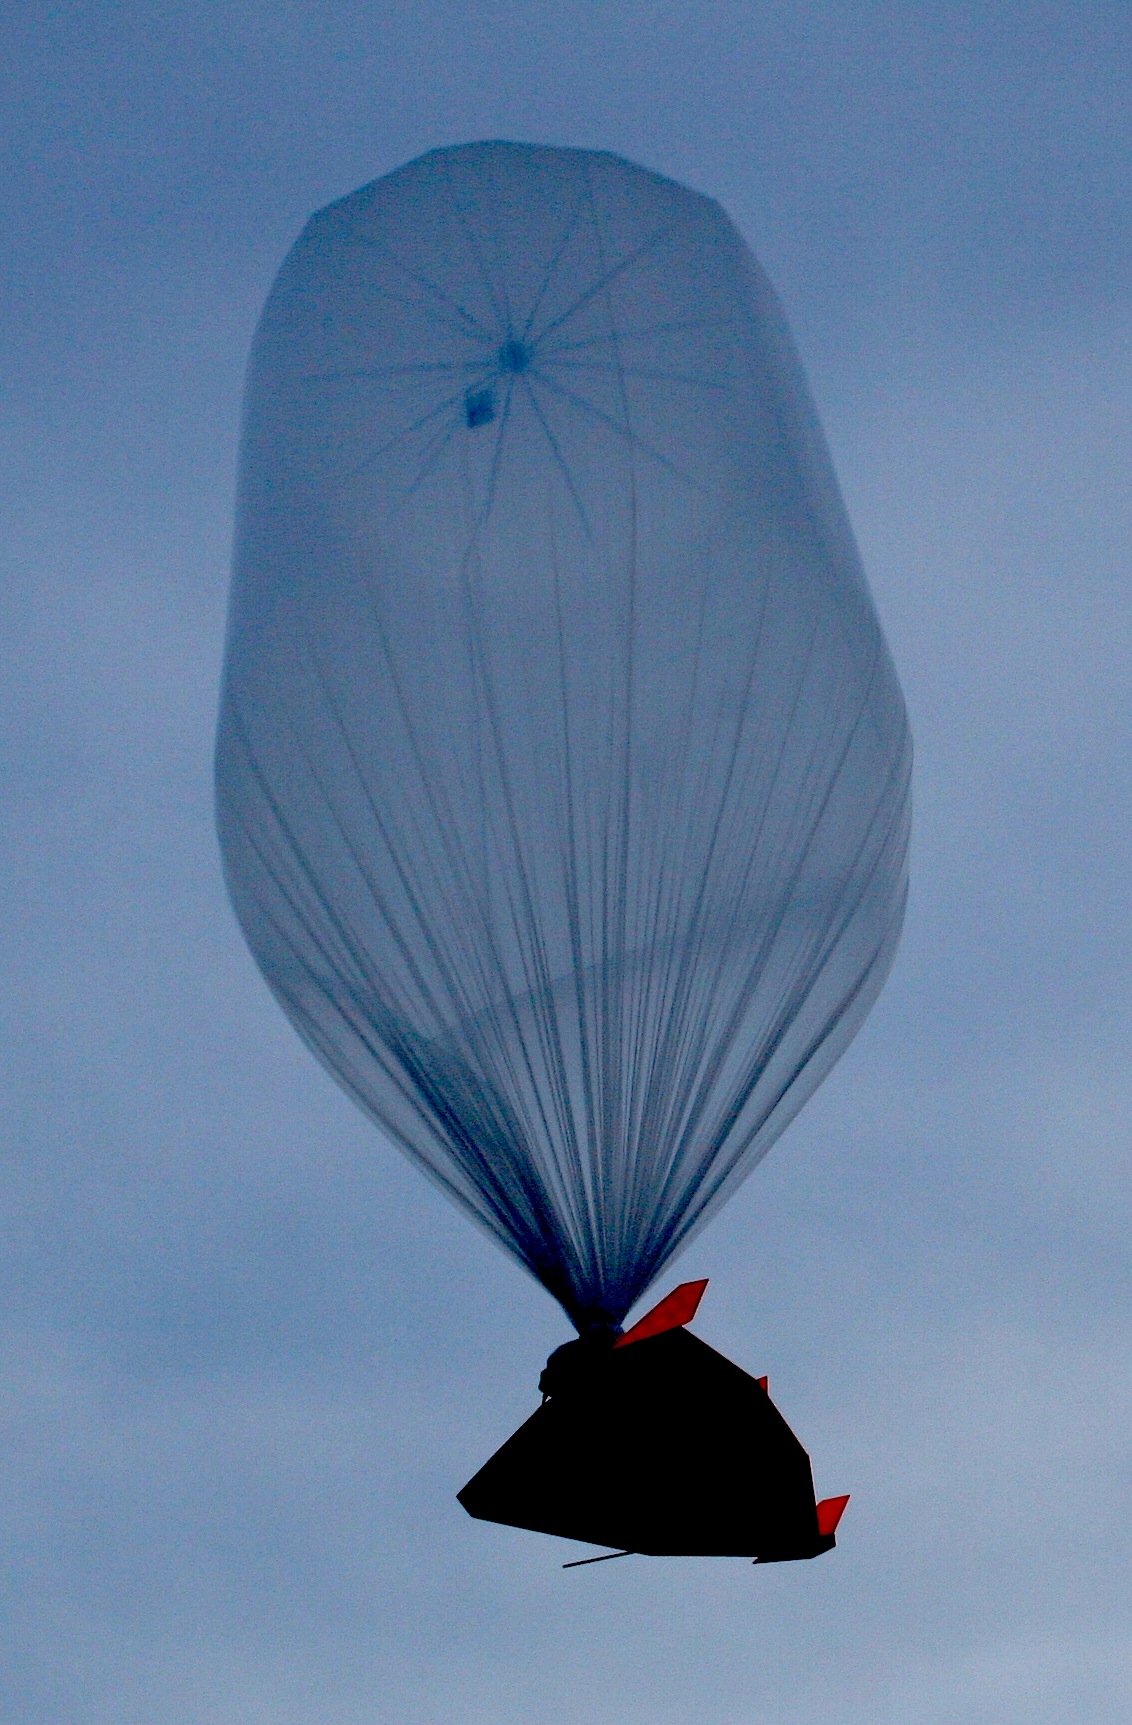 high-altitude balloon in midair